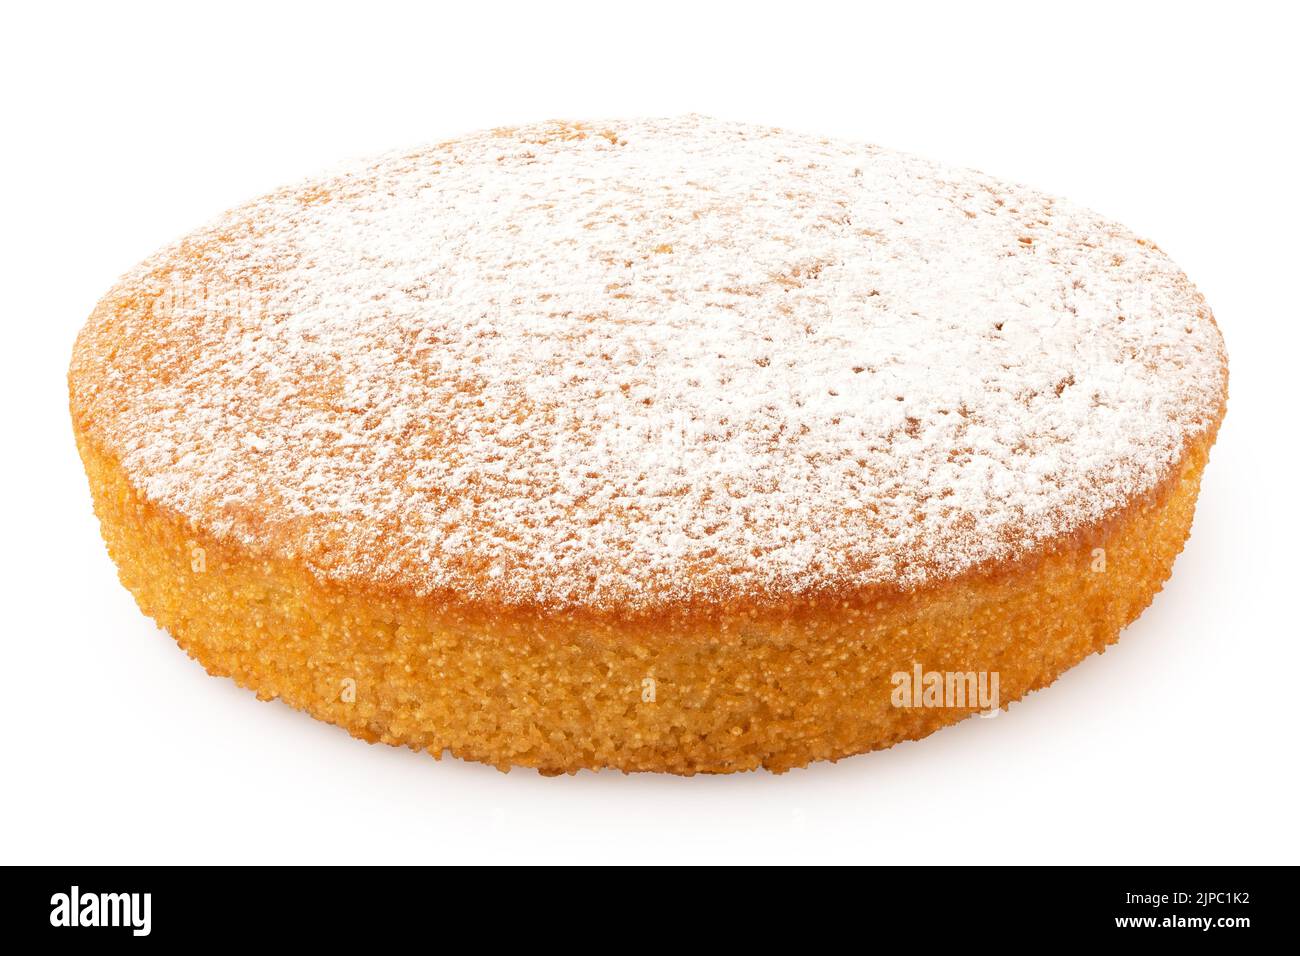 Whole lemon sponge cake with icing sugar topping isolated on white. Stock Photo